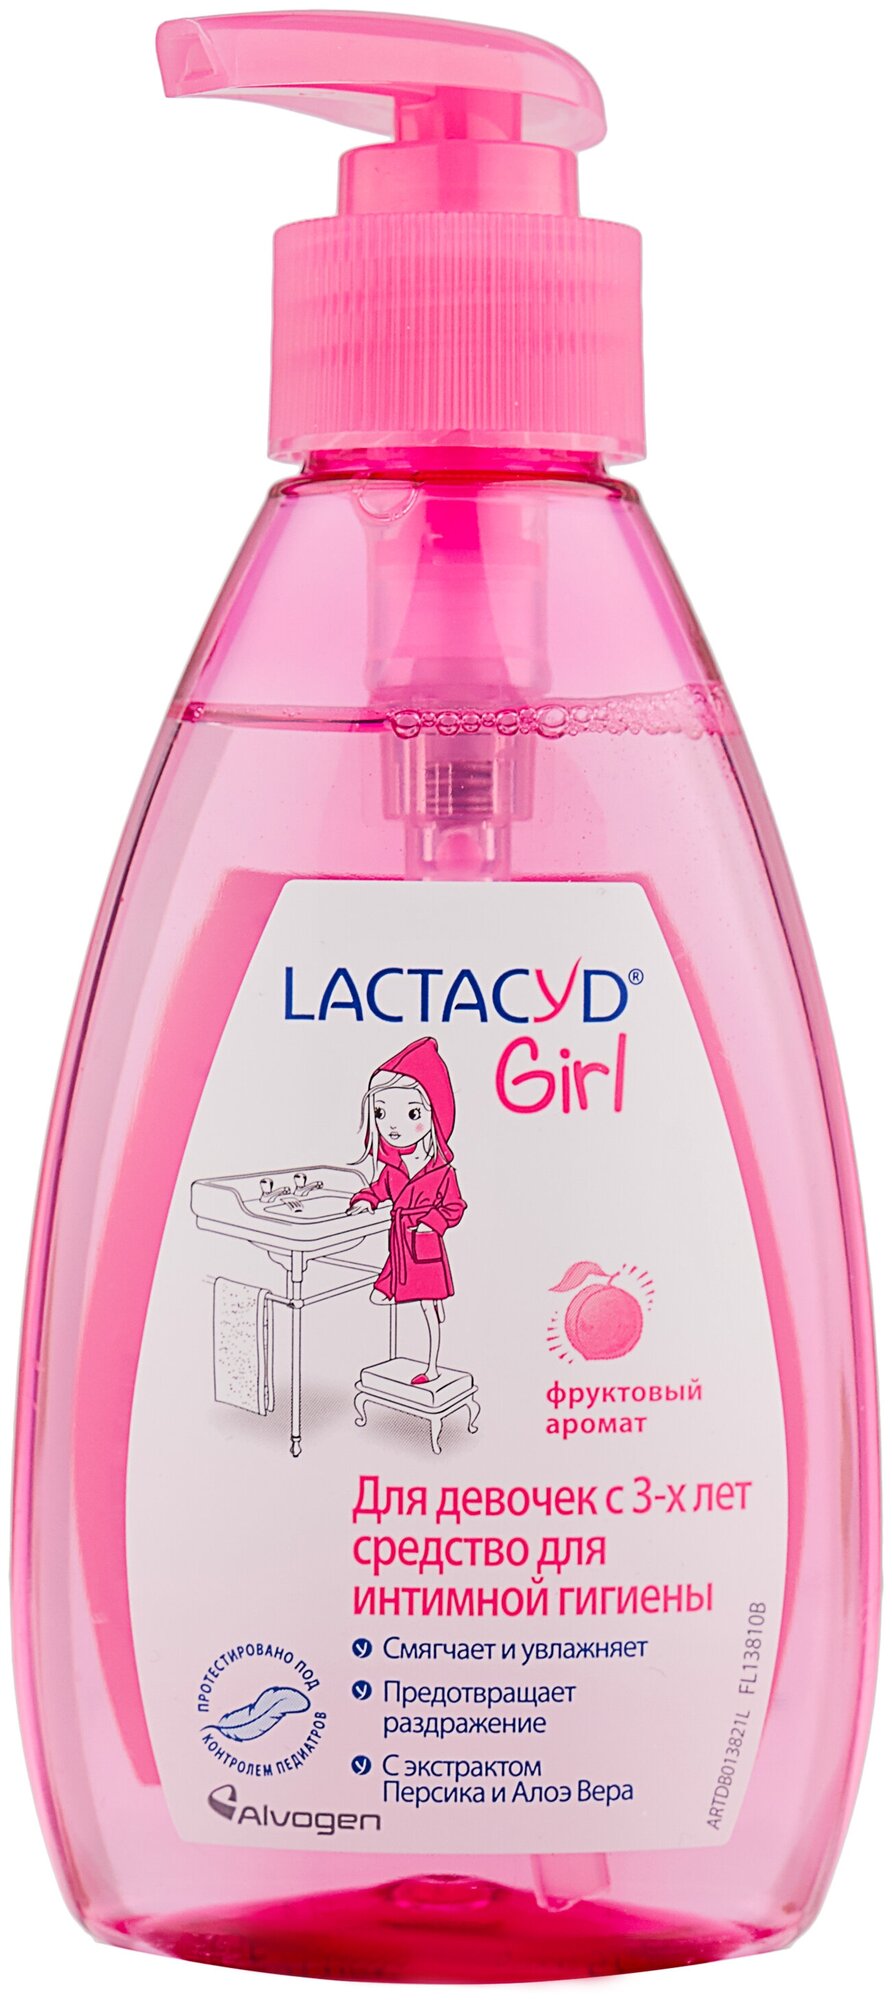 Lactacyd средство для интимной гигиены Girl 200 мл 1 шт.